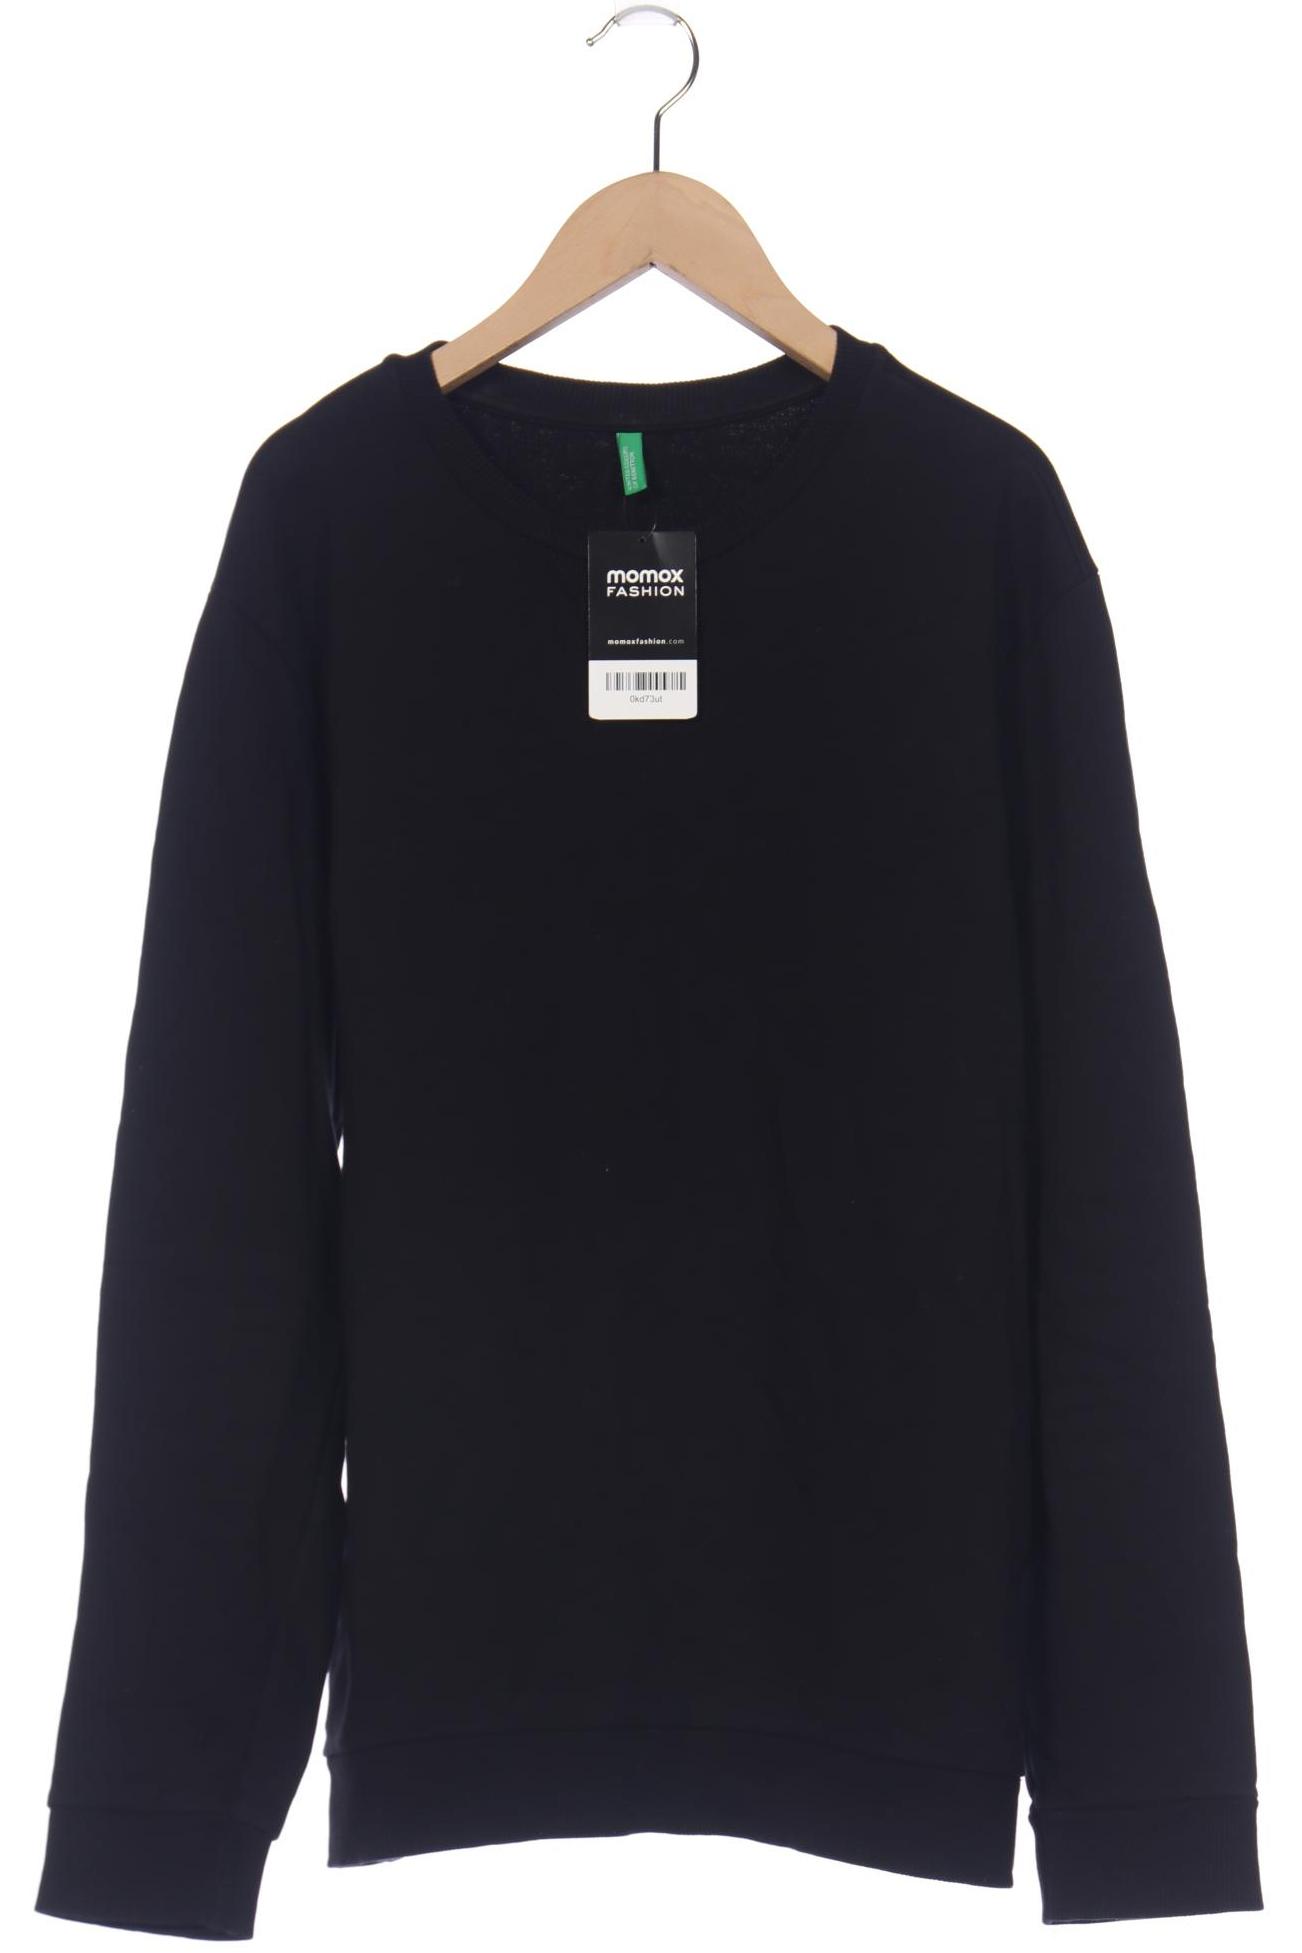 UNITED COLORS OF BENETTON Herren Sweatshirt, schwarz von United Colors of Benetton